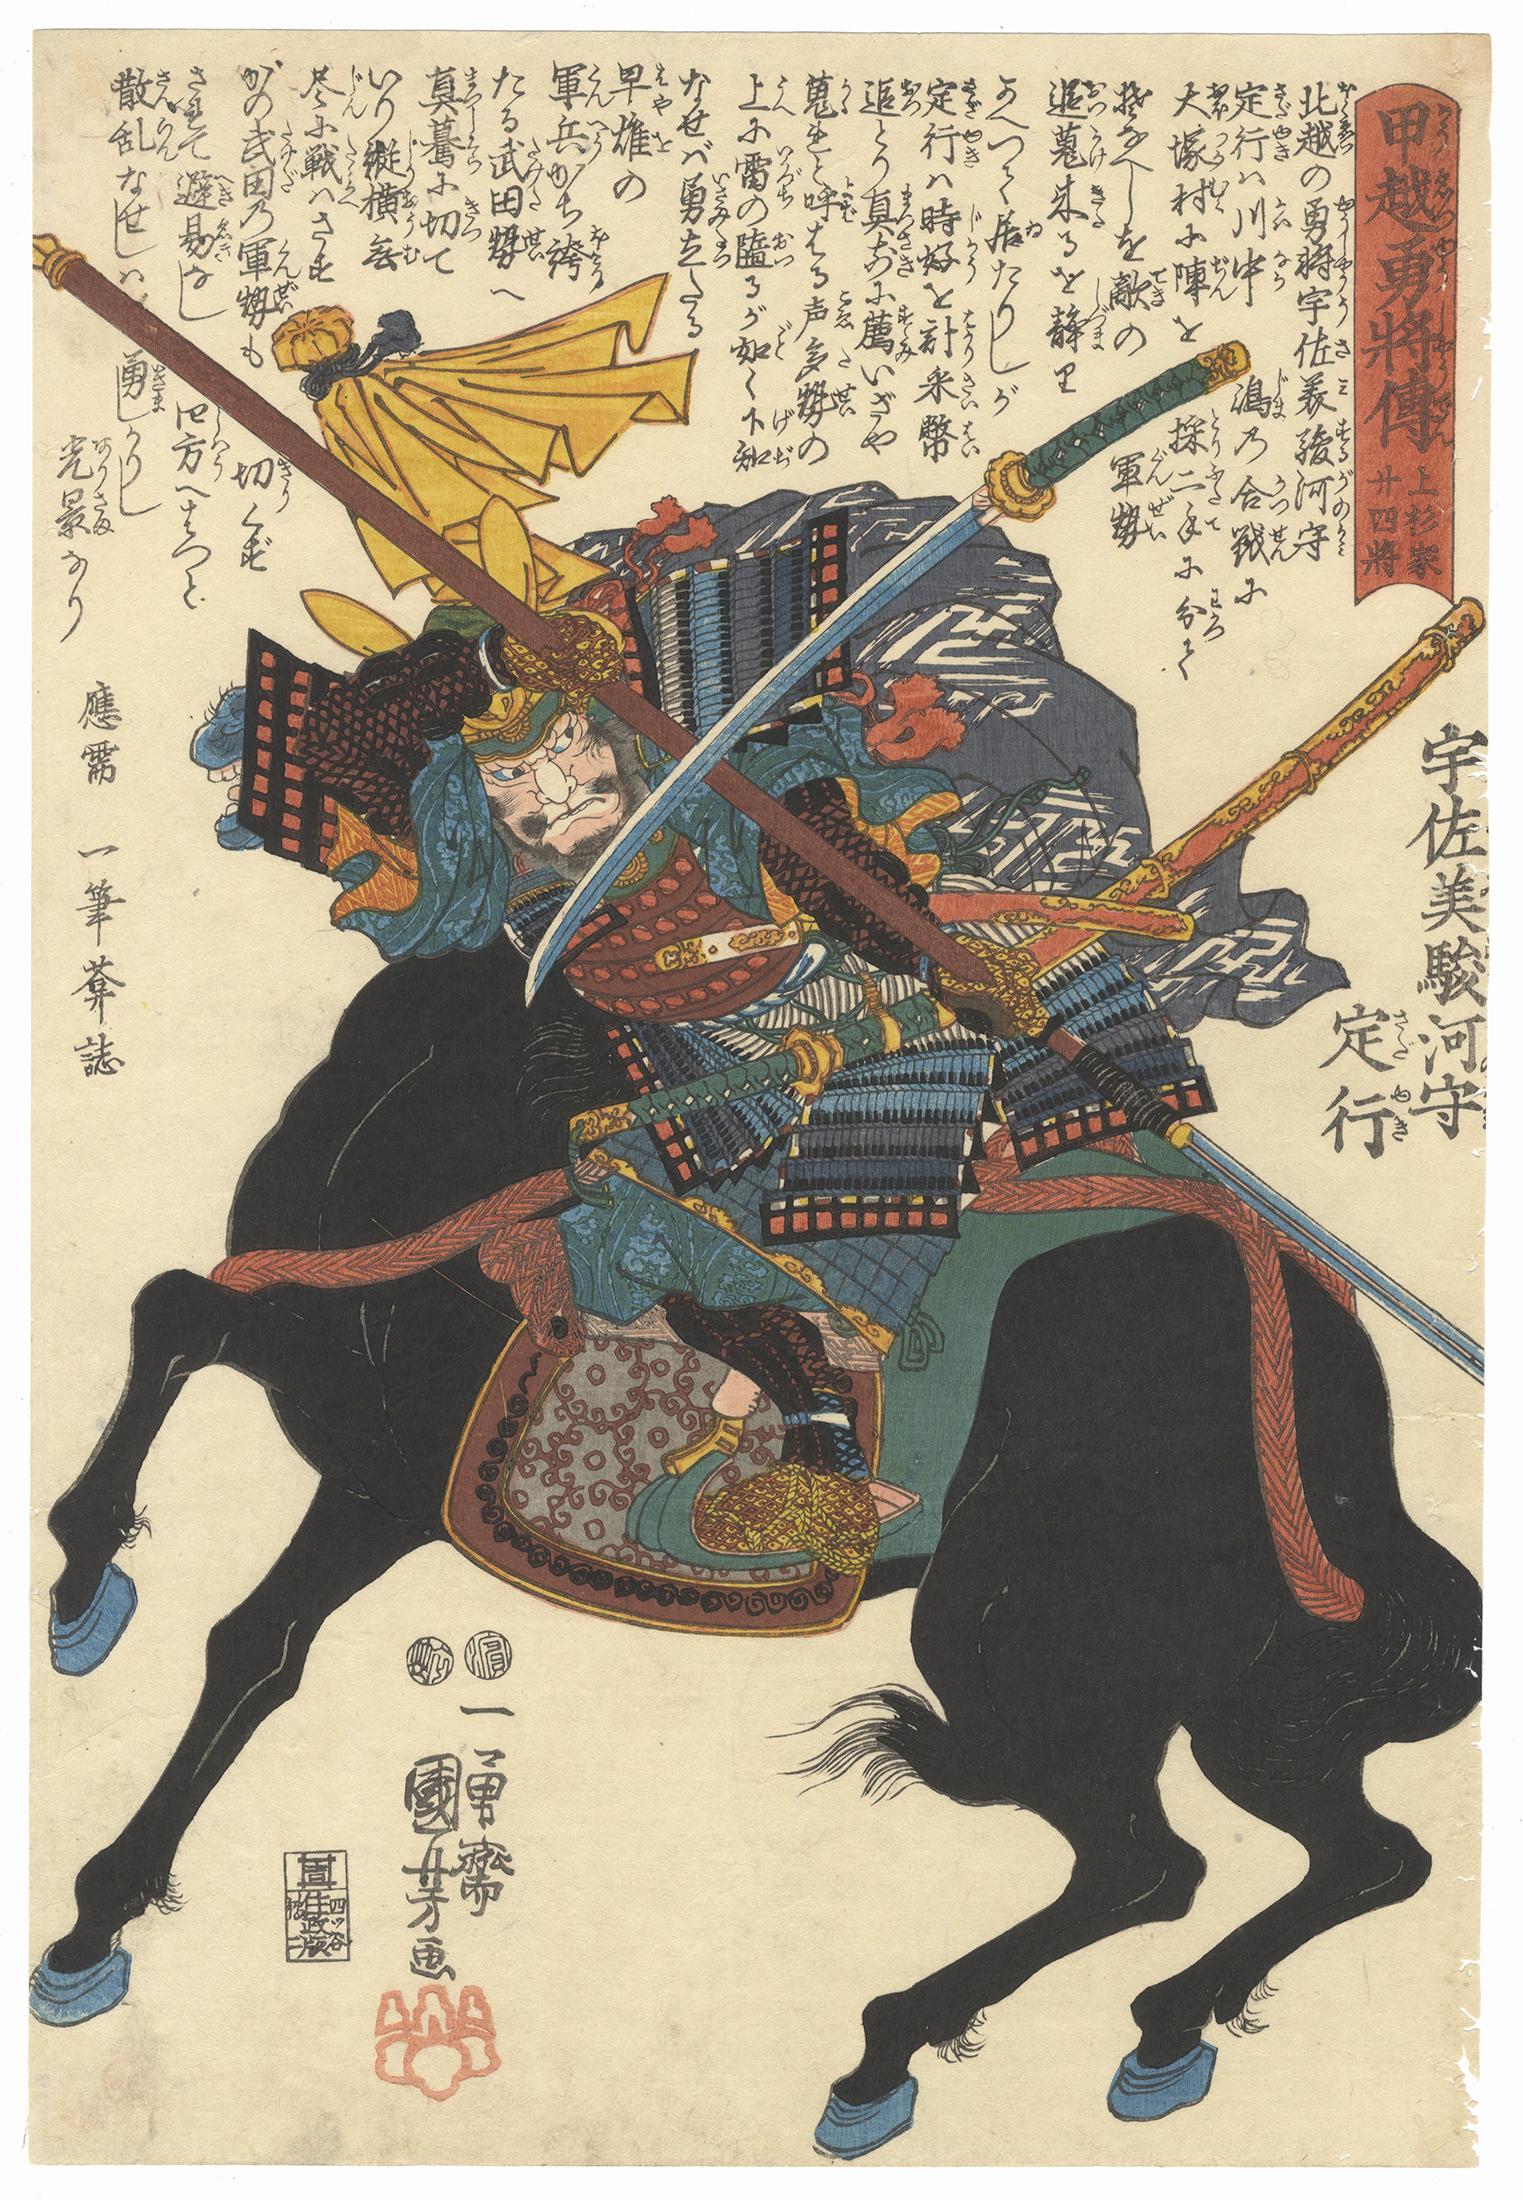 Utagawa Kuniyoshi Portrait Print - Kuniyoshi, Samurai, Original Japanese Woodblock Print, Ukiyo-e, Sengoku, Horse